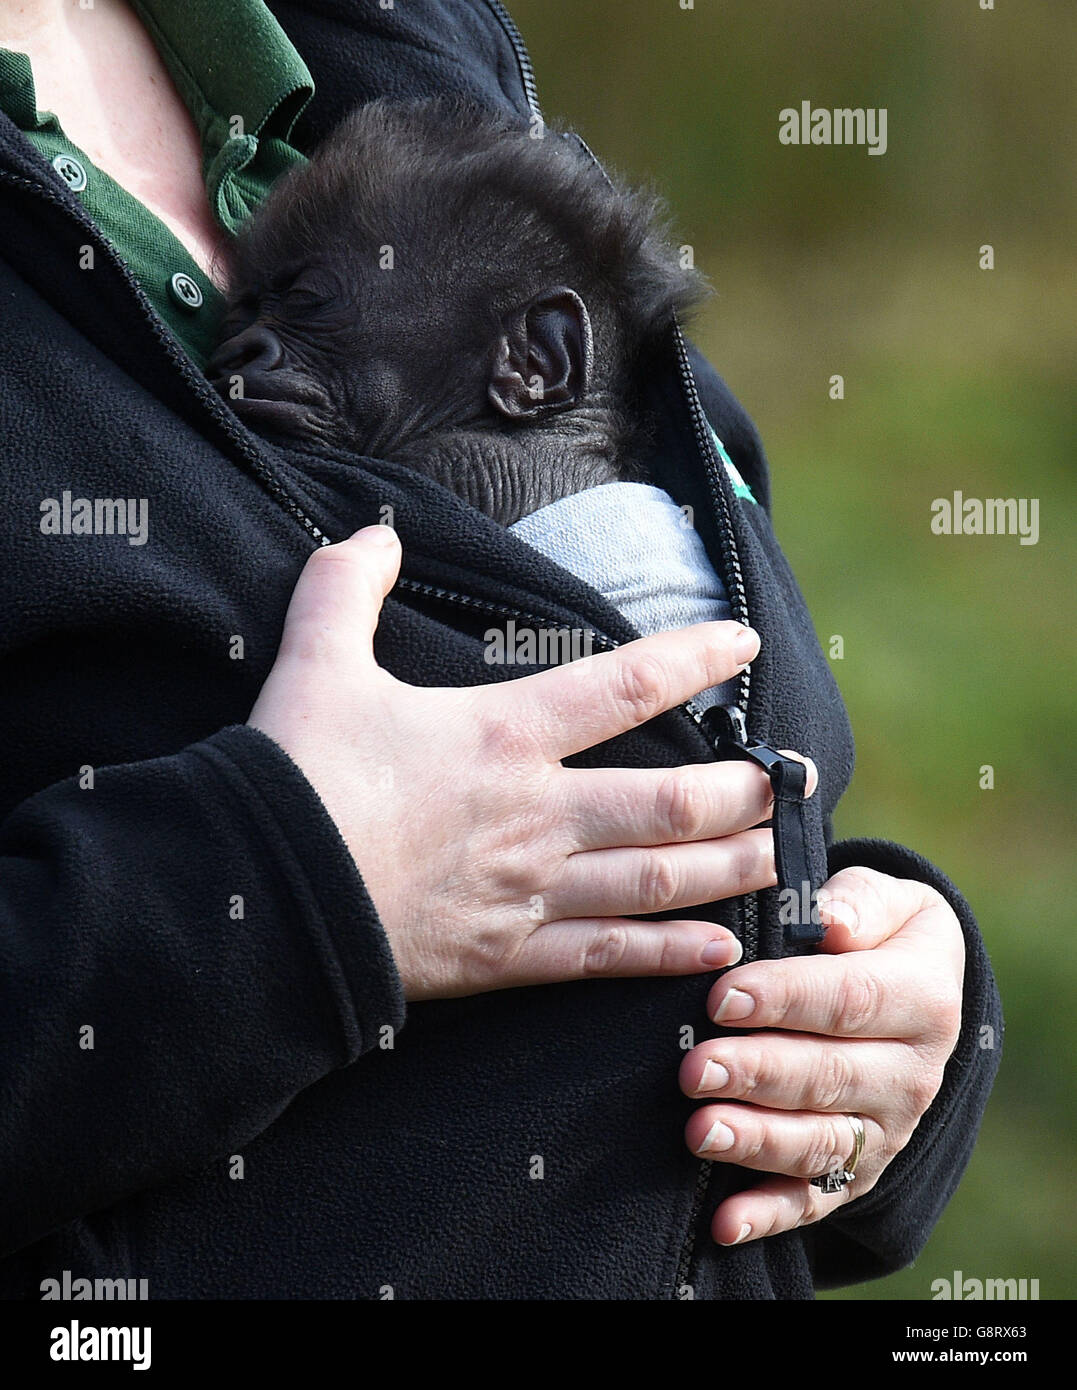 Il gorilla Afia, bambino di sette settimane dello zoo di Bristol, nato dalla sezione cesarean di emergenza, emerge per la prima volta all'esterno in un'imbragatura indossata dal suo guardiano Lynsey Bugg, assistente curatore dei mammiferi. Foto Stock